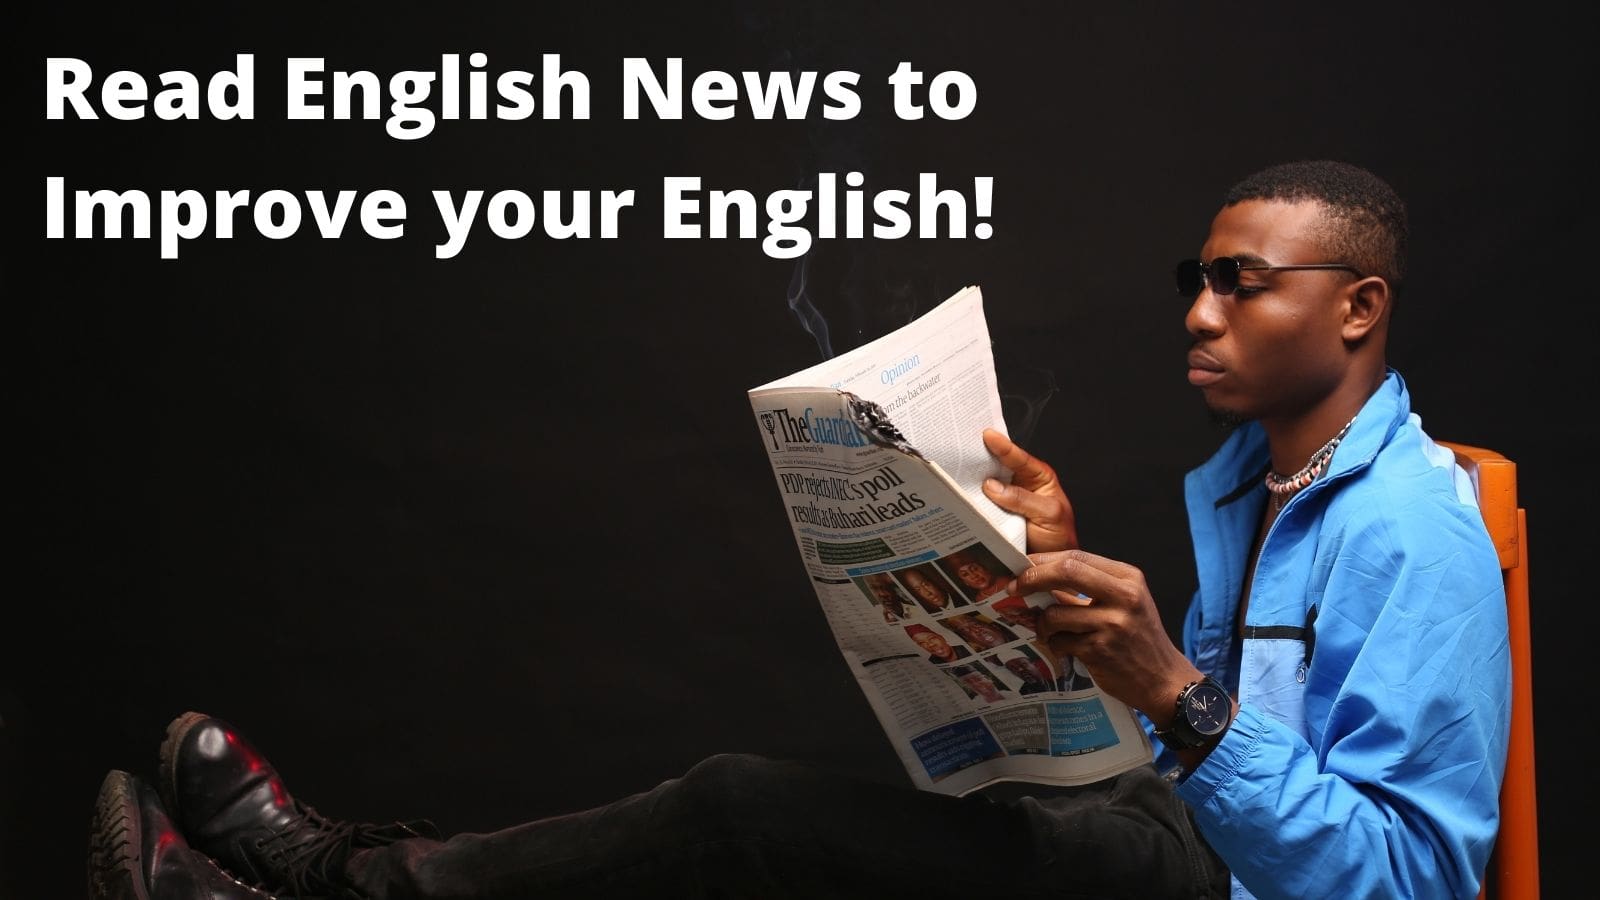 Đọc tiếng Anh để cải thiện trình độ tiếng Anh